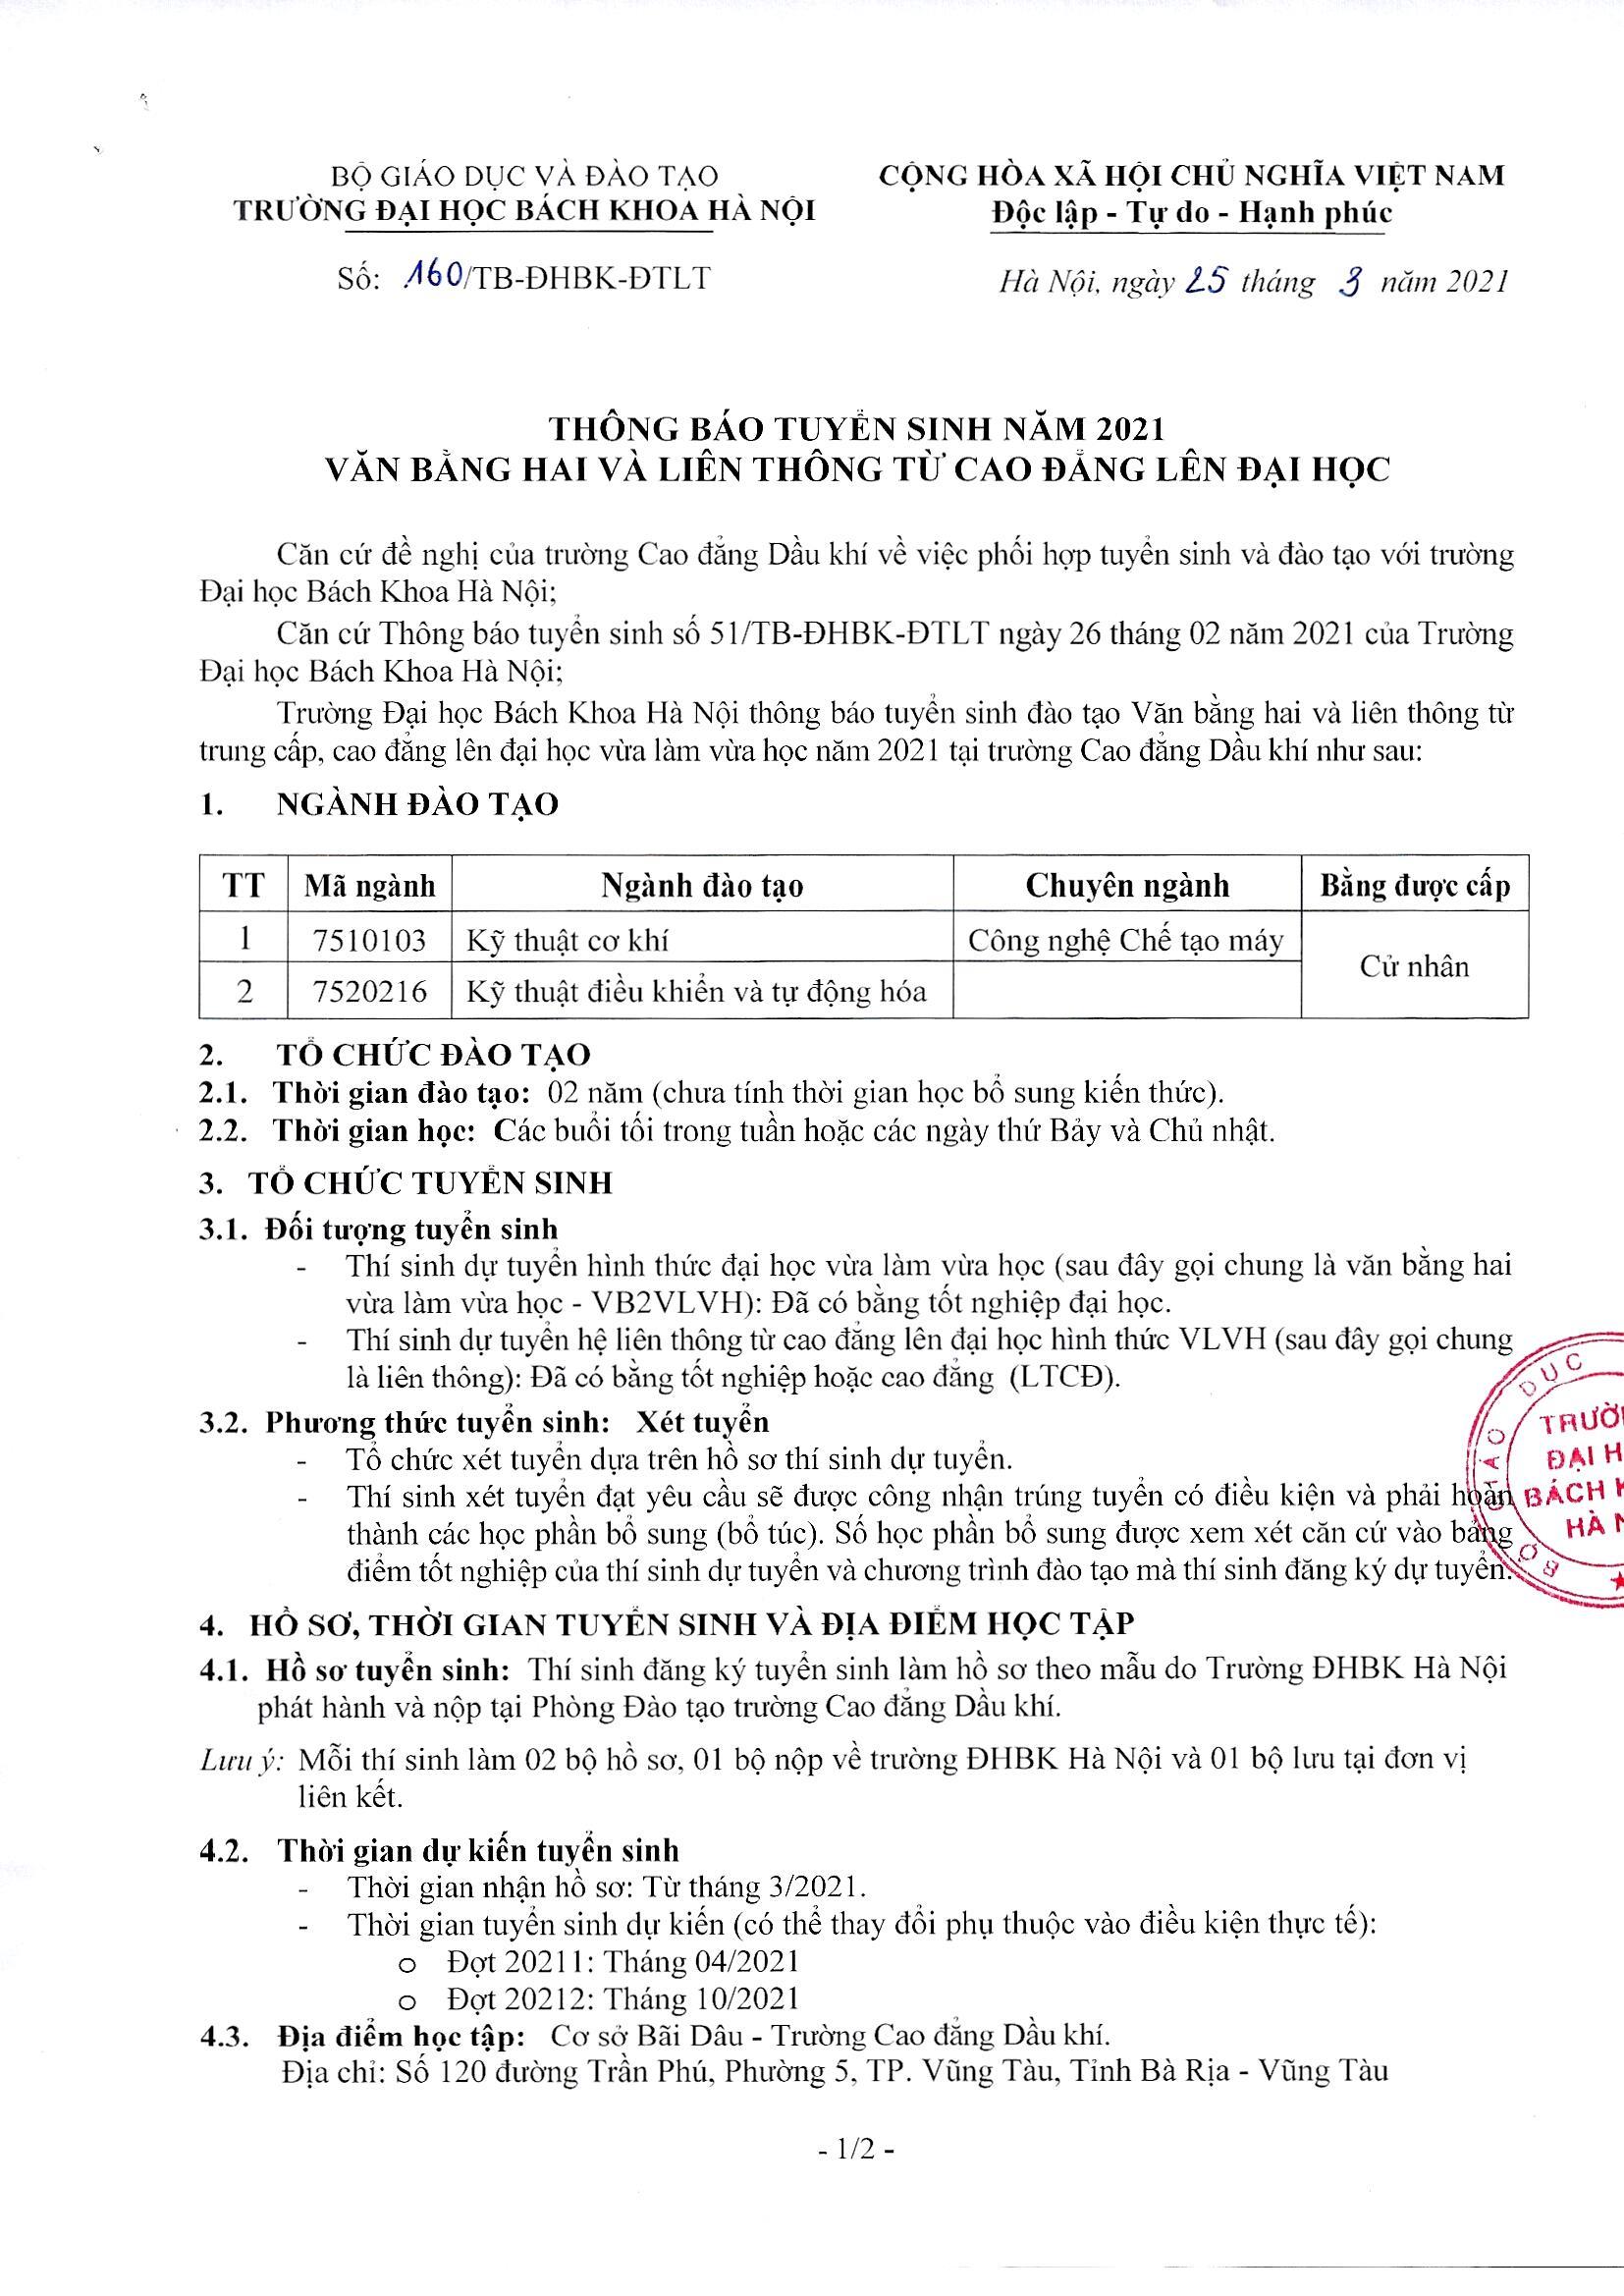 Thong Bao Tuyen Sinh Lien Thong Dhbkhn 2021 Tai Pvmtc Page 1 Image 0001